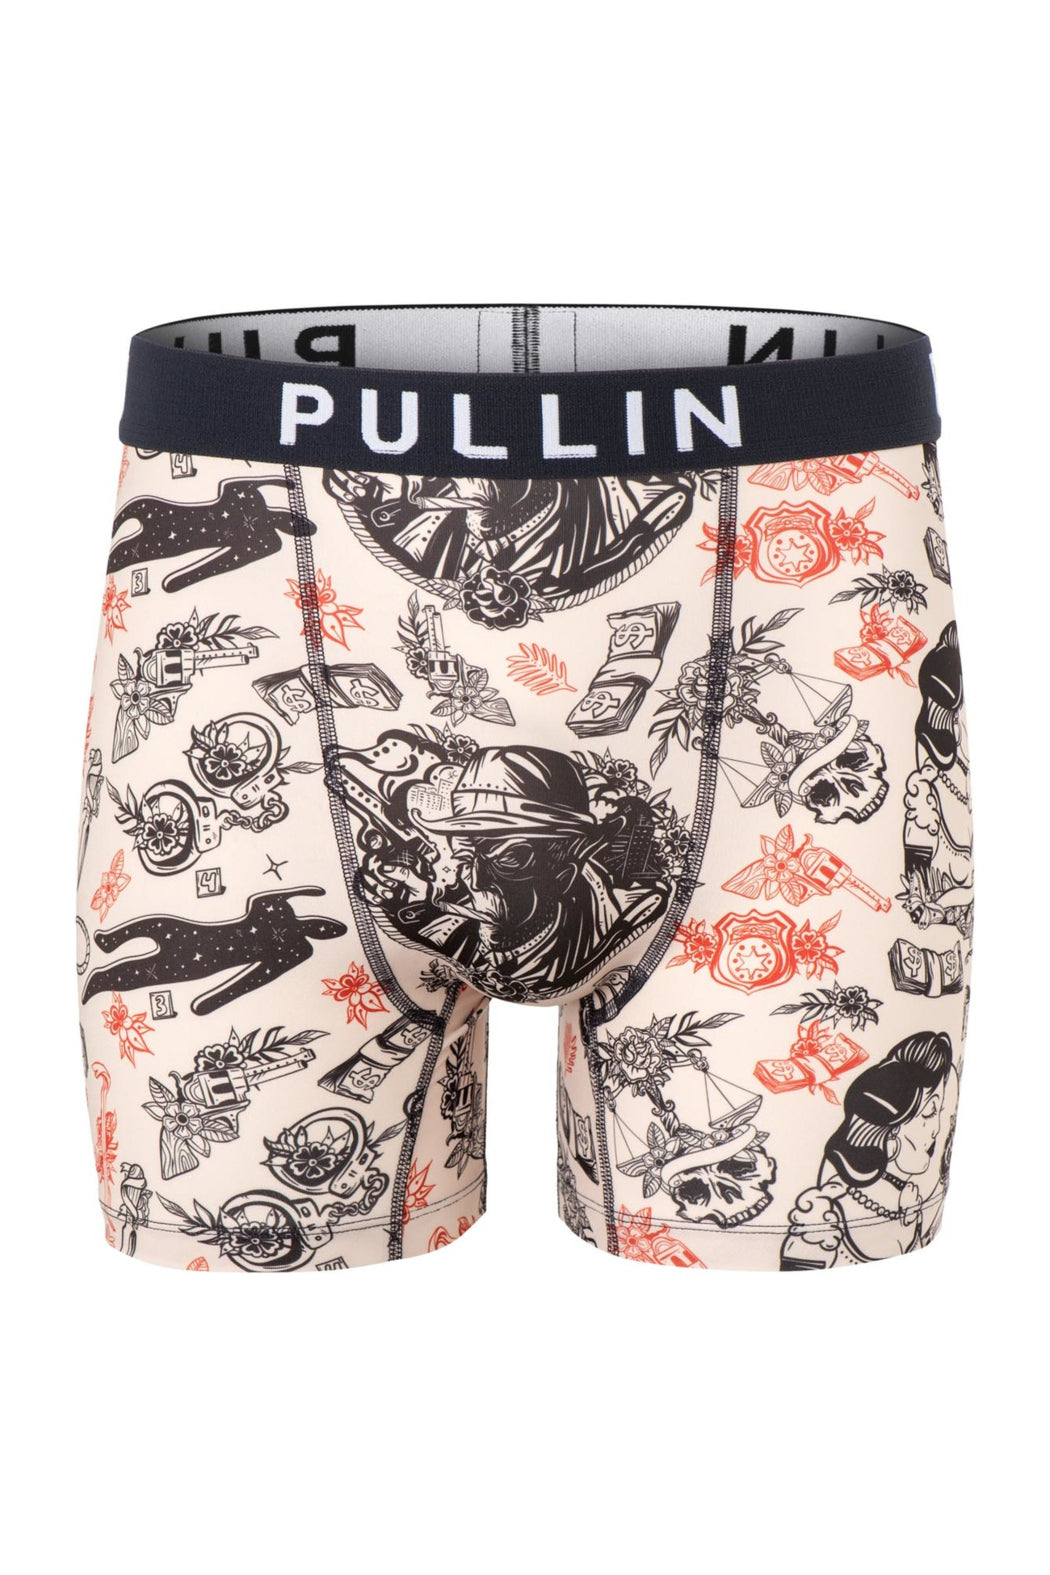 Pullin Men's Underwear 2022 collection